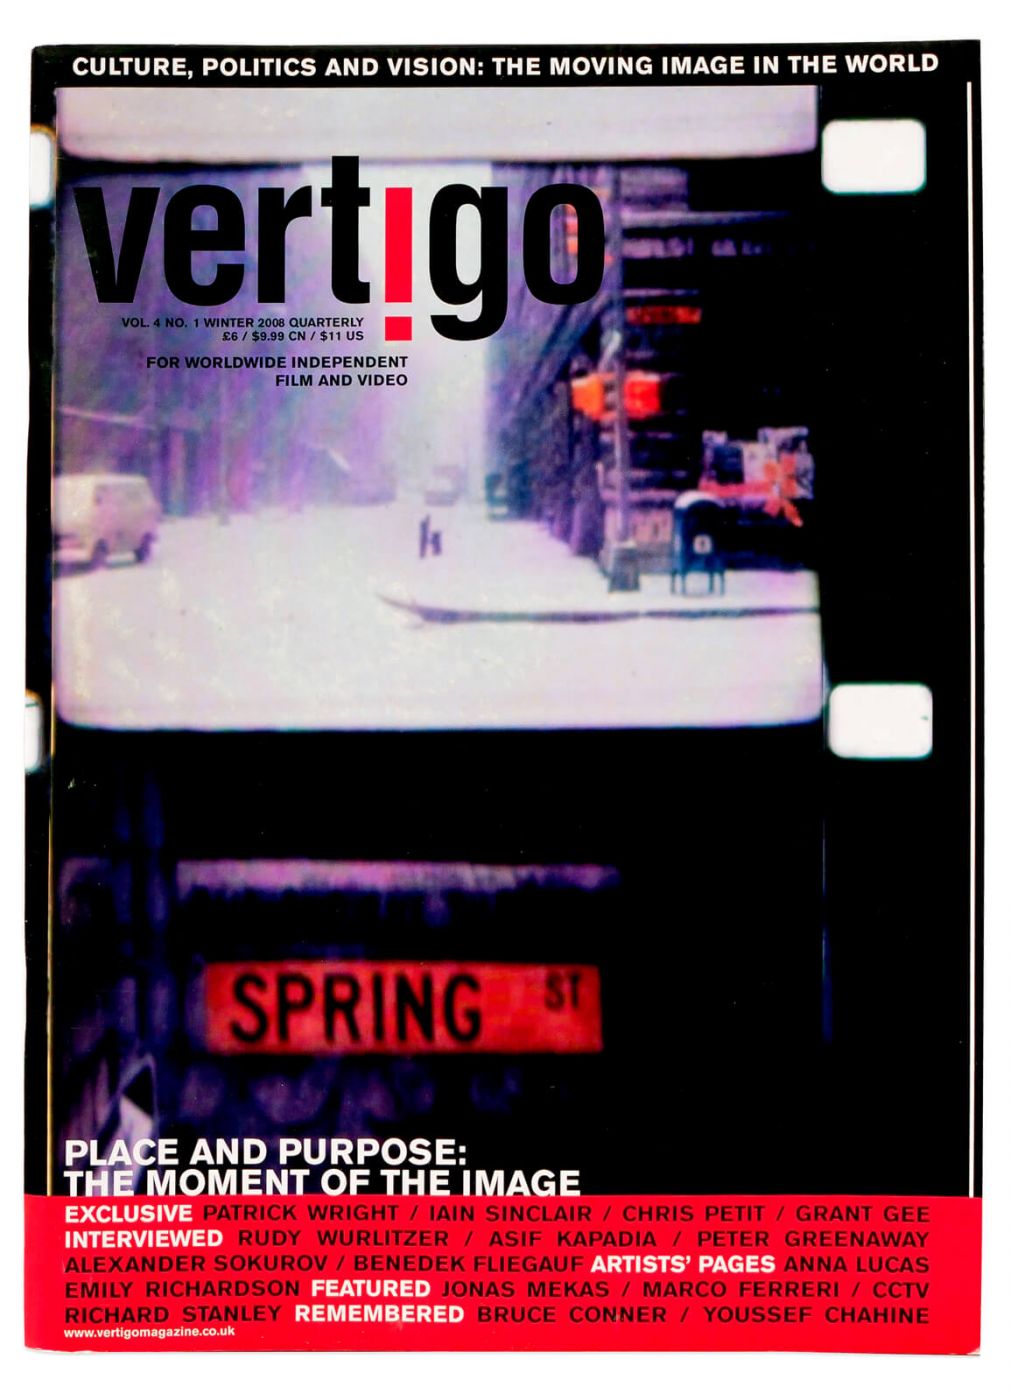 Vertigo magazine – Cover